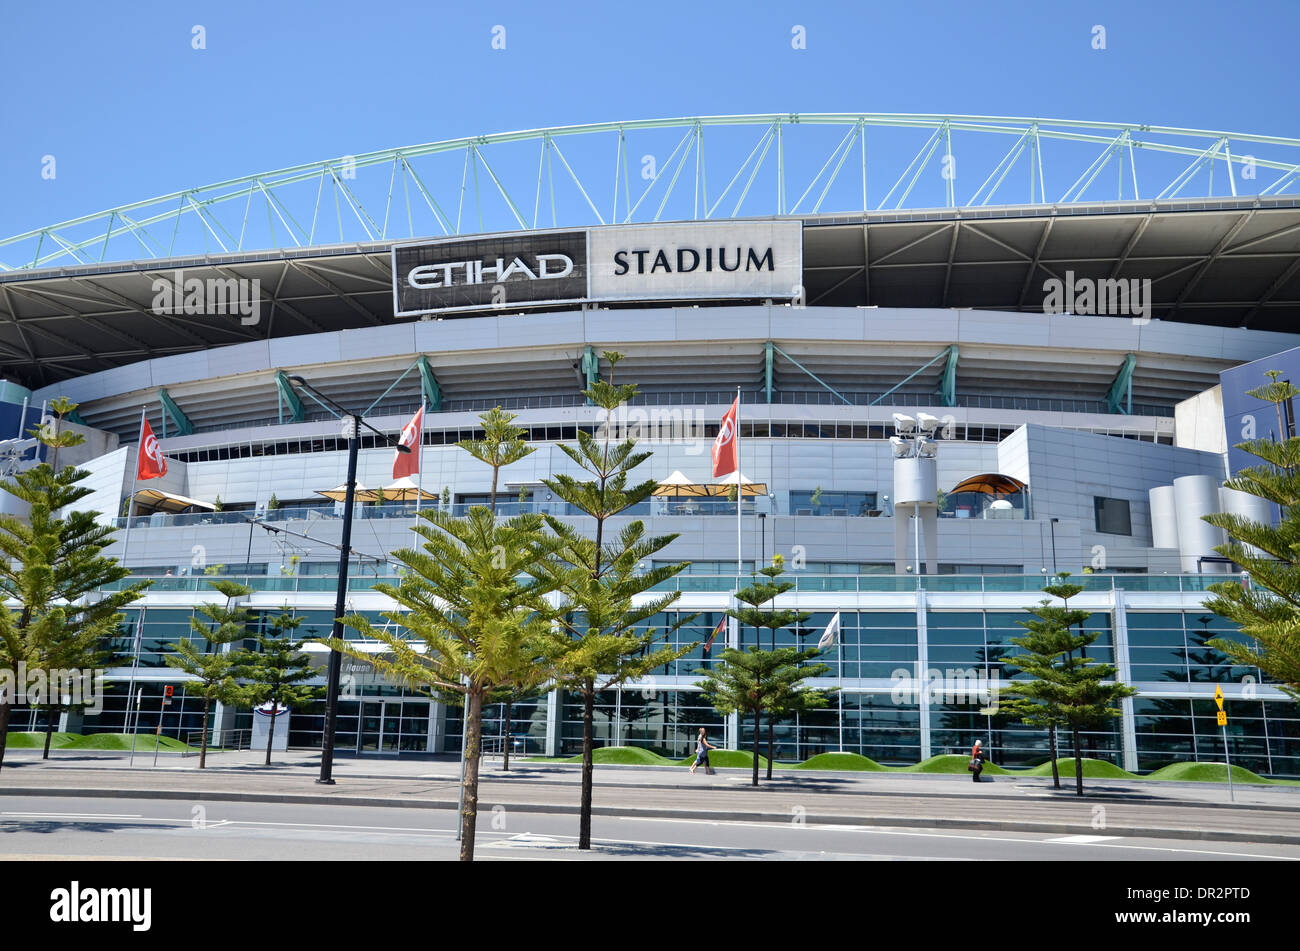 Le stade Etihad (Docklands) dans les Docklands de Melbourne Banque D'Images